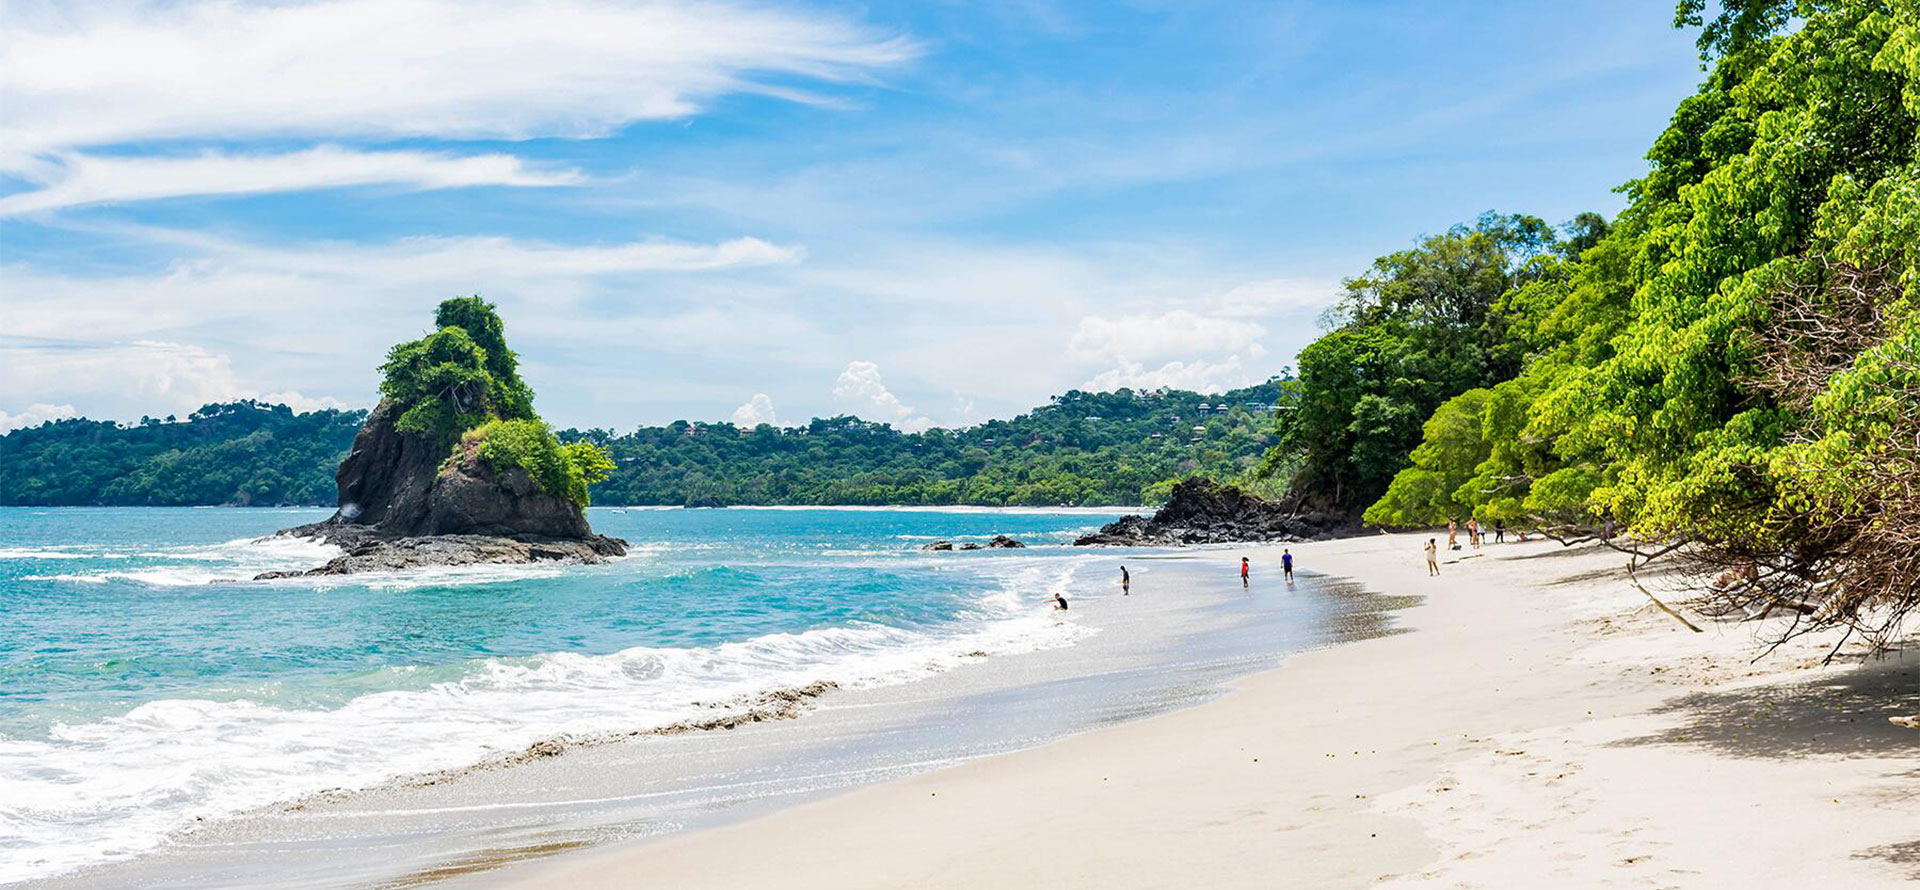 Bay in Costa Rica Beach.